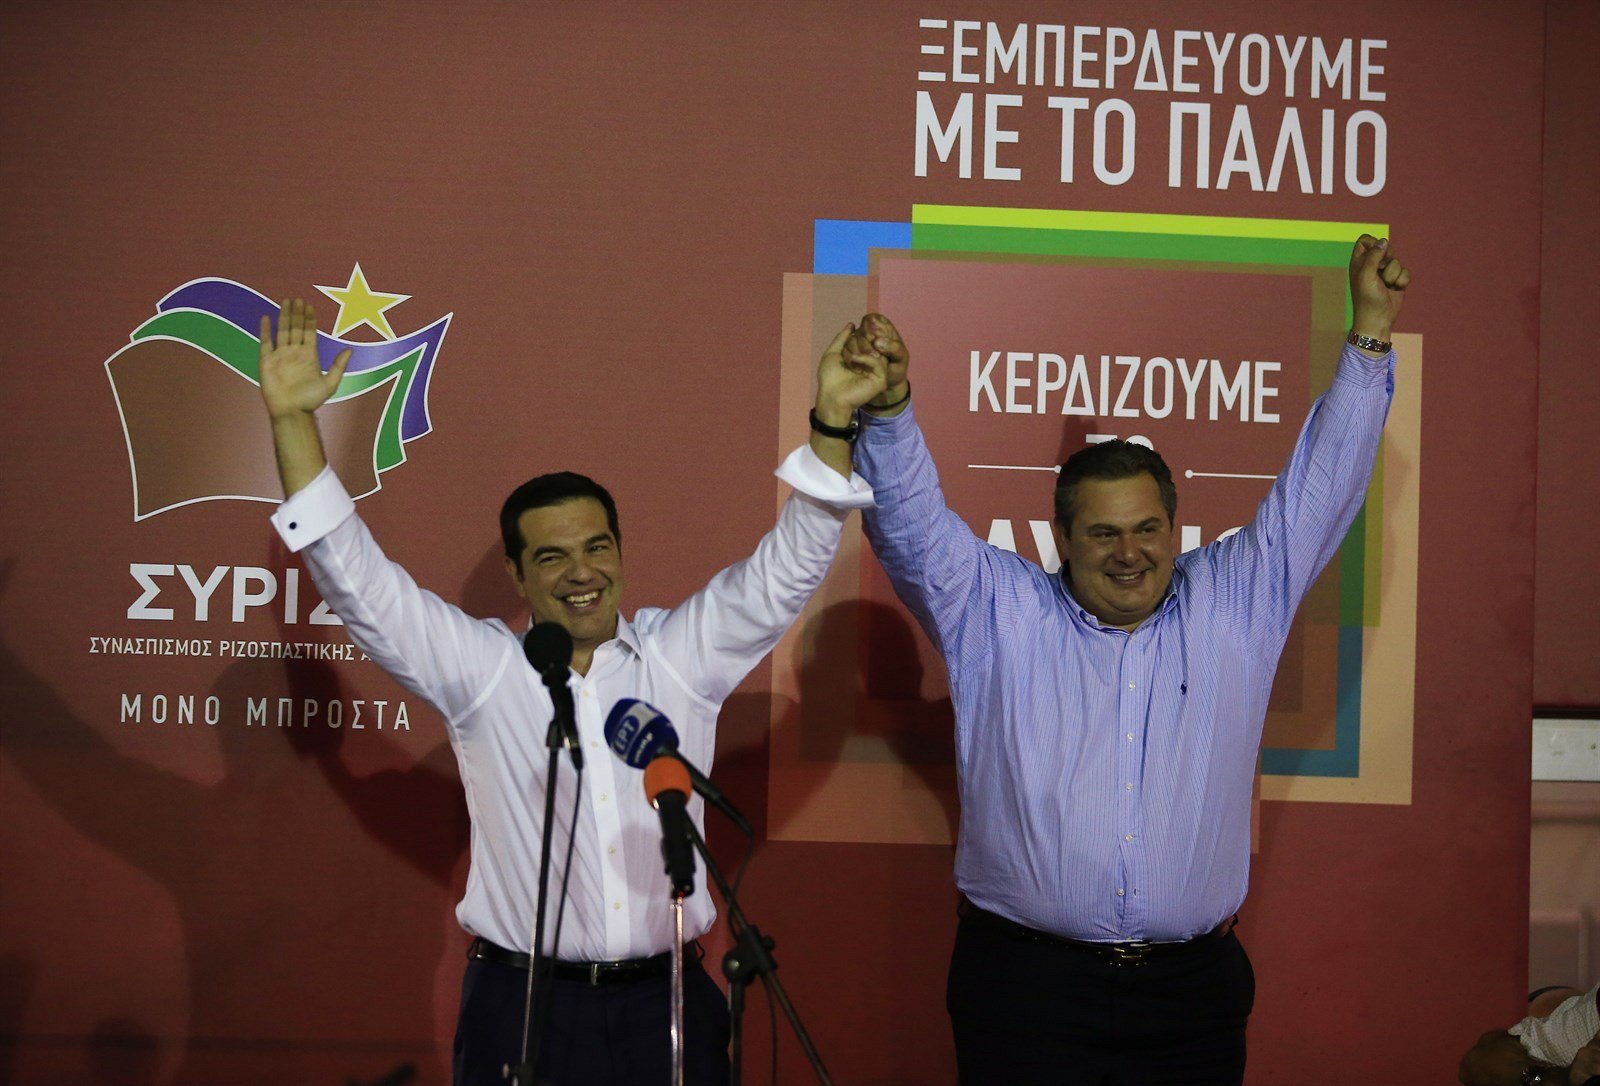 Μόλις 13% των Ελλήνων εμπιστεύεται την κυβέρνηση ΣΥΡΙΖΑ-ΑΝΕΛ